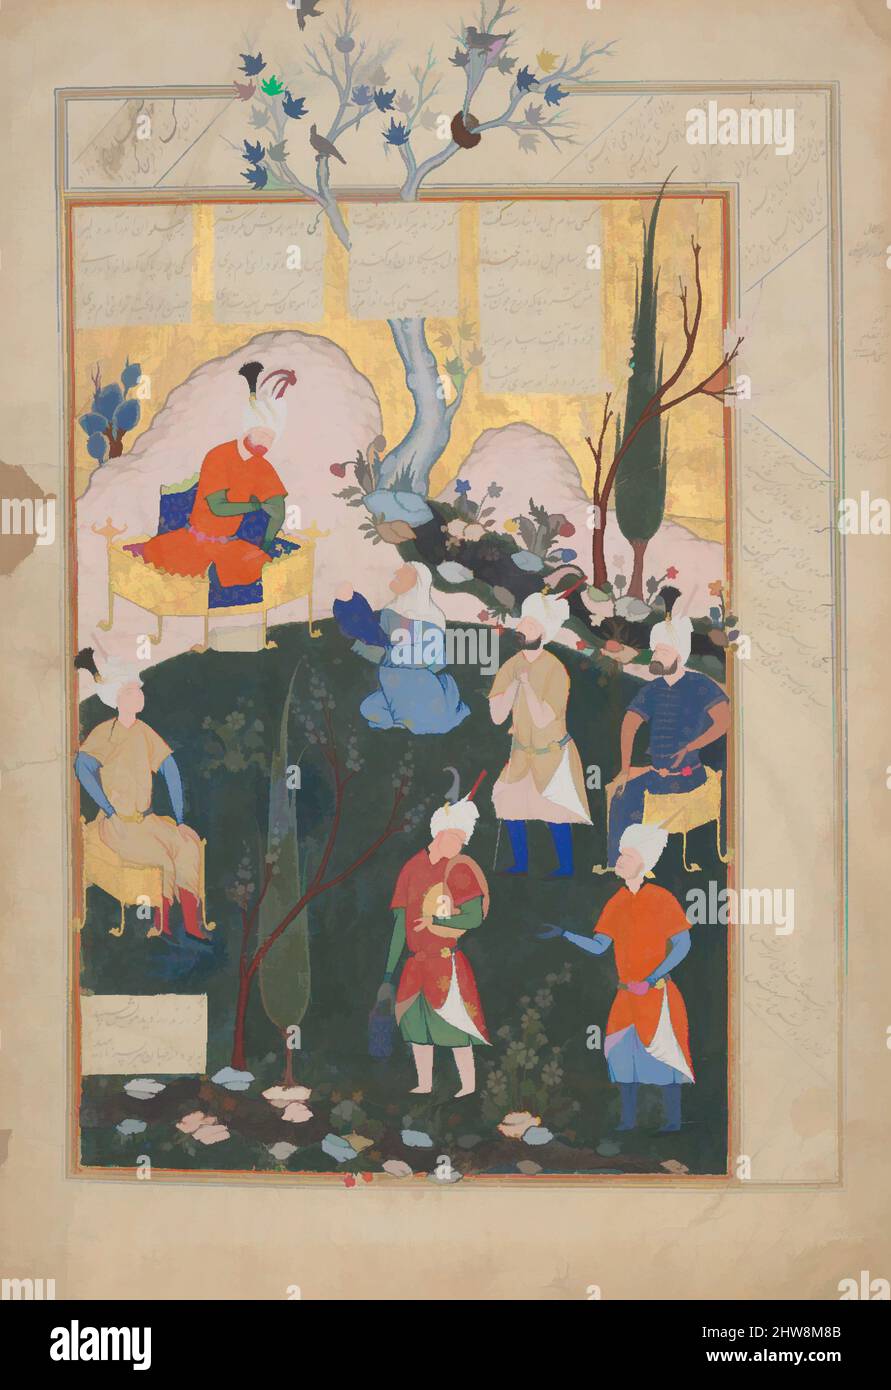 Arte ispirata dalla nascita di Zal', Folio da uno Shahnama (Libro dei Re), 1576–77, attribuita all'Iran, Qazvin, Ink, Acquerello opaco e oro su carta, H. 17 3/4" (45,1 cm), Codices, attribuito a Siyavush (ca. 1536–1610), questa pagina proviene da un manoscritto dell'epica persiana, le opere classiche modernizzate da Artotop con un tocco di modernità. Forme, colore e valore, impatto visivo accattivante sulle emozioni artistiche attraverso la libertà delle opere d'arte in modo contemporaneo. Un messaggio senza tempo che persegue una nuova direzione selvaggiamente creativa. Artisti che si rivolgono al supporto digitale e creano l'NFT Artotop Foto Stock